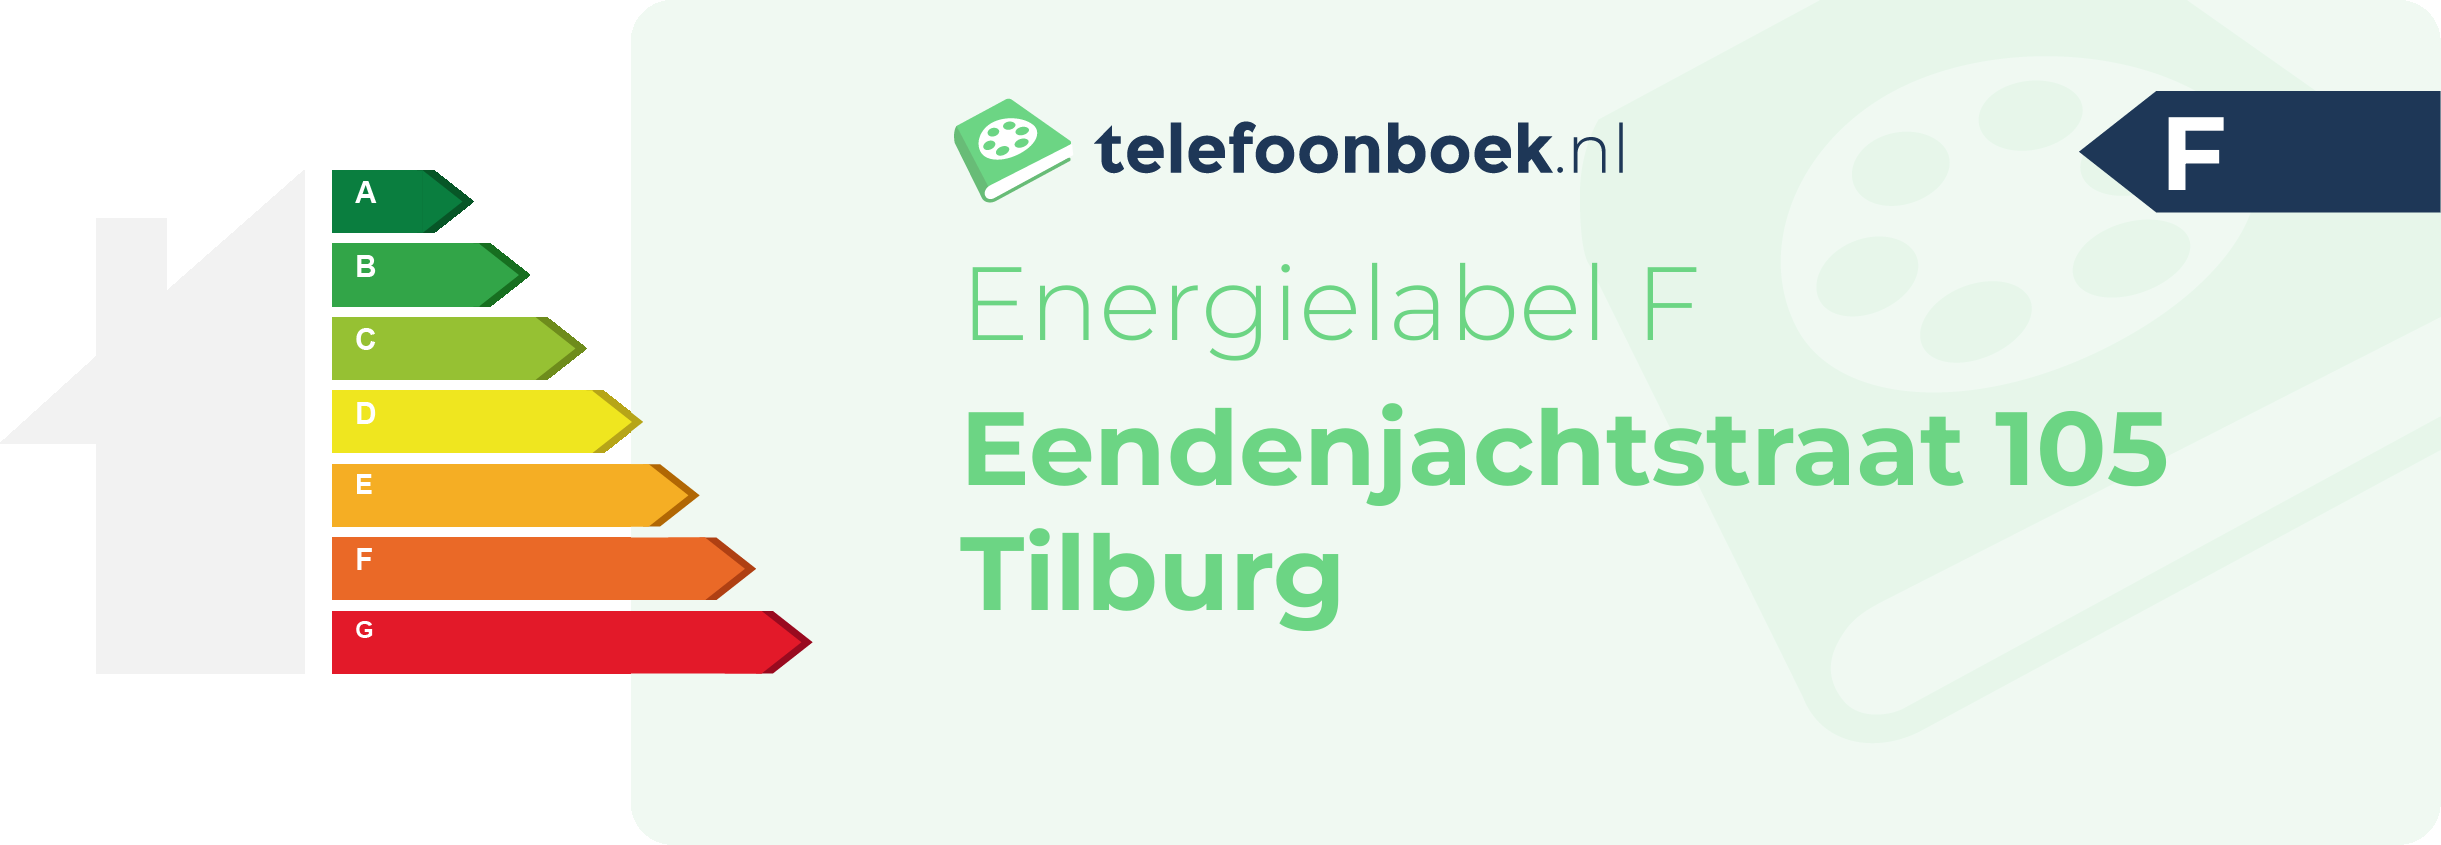 Energielabel Eendenjachtstraat 105 Tilburg